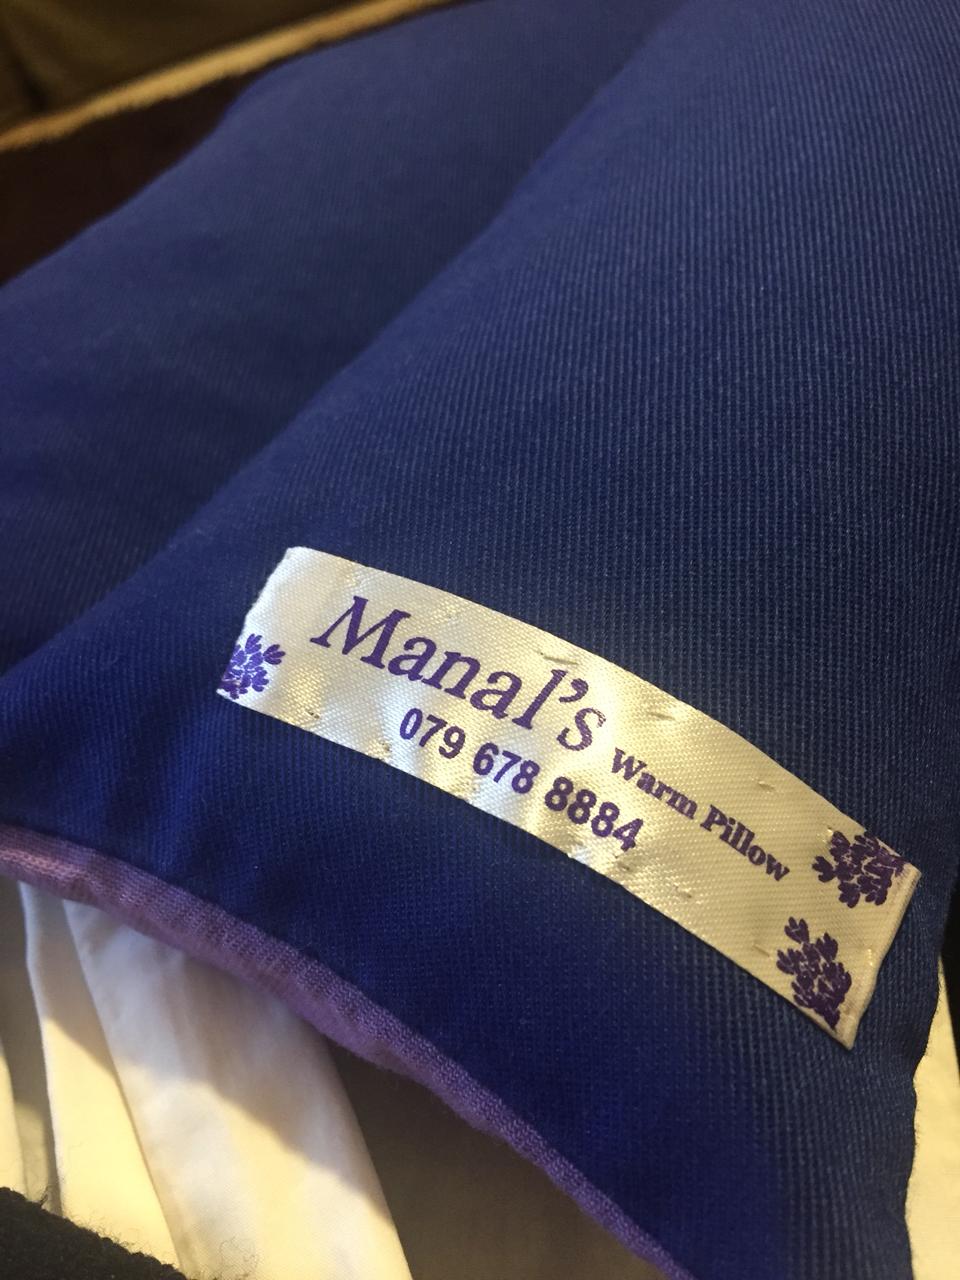 Manal’s Warm Pillow